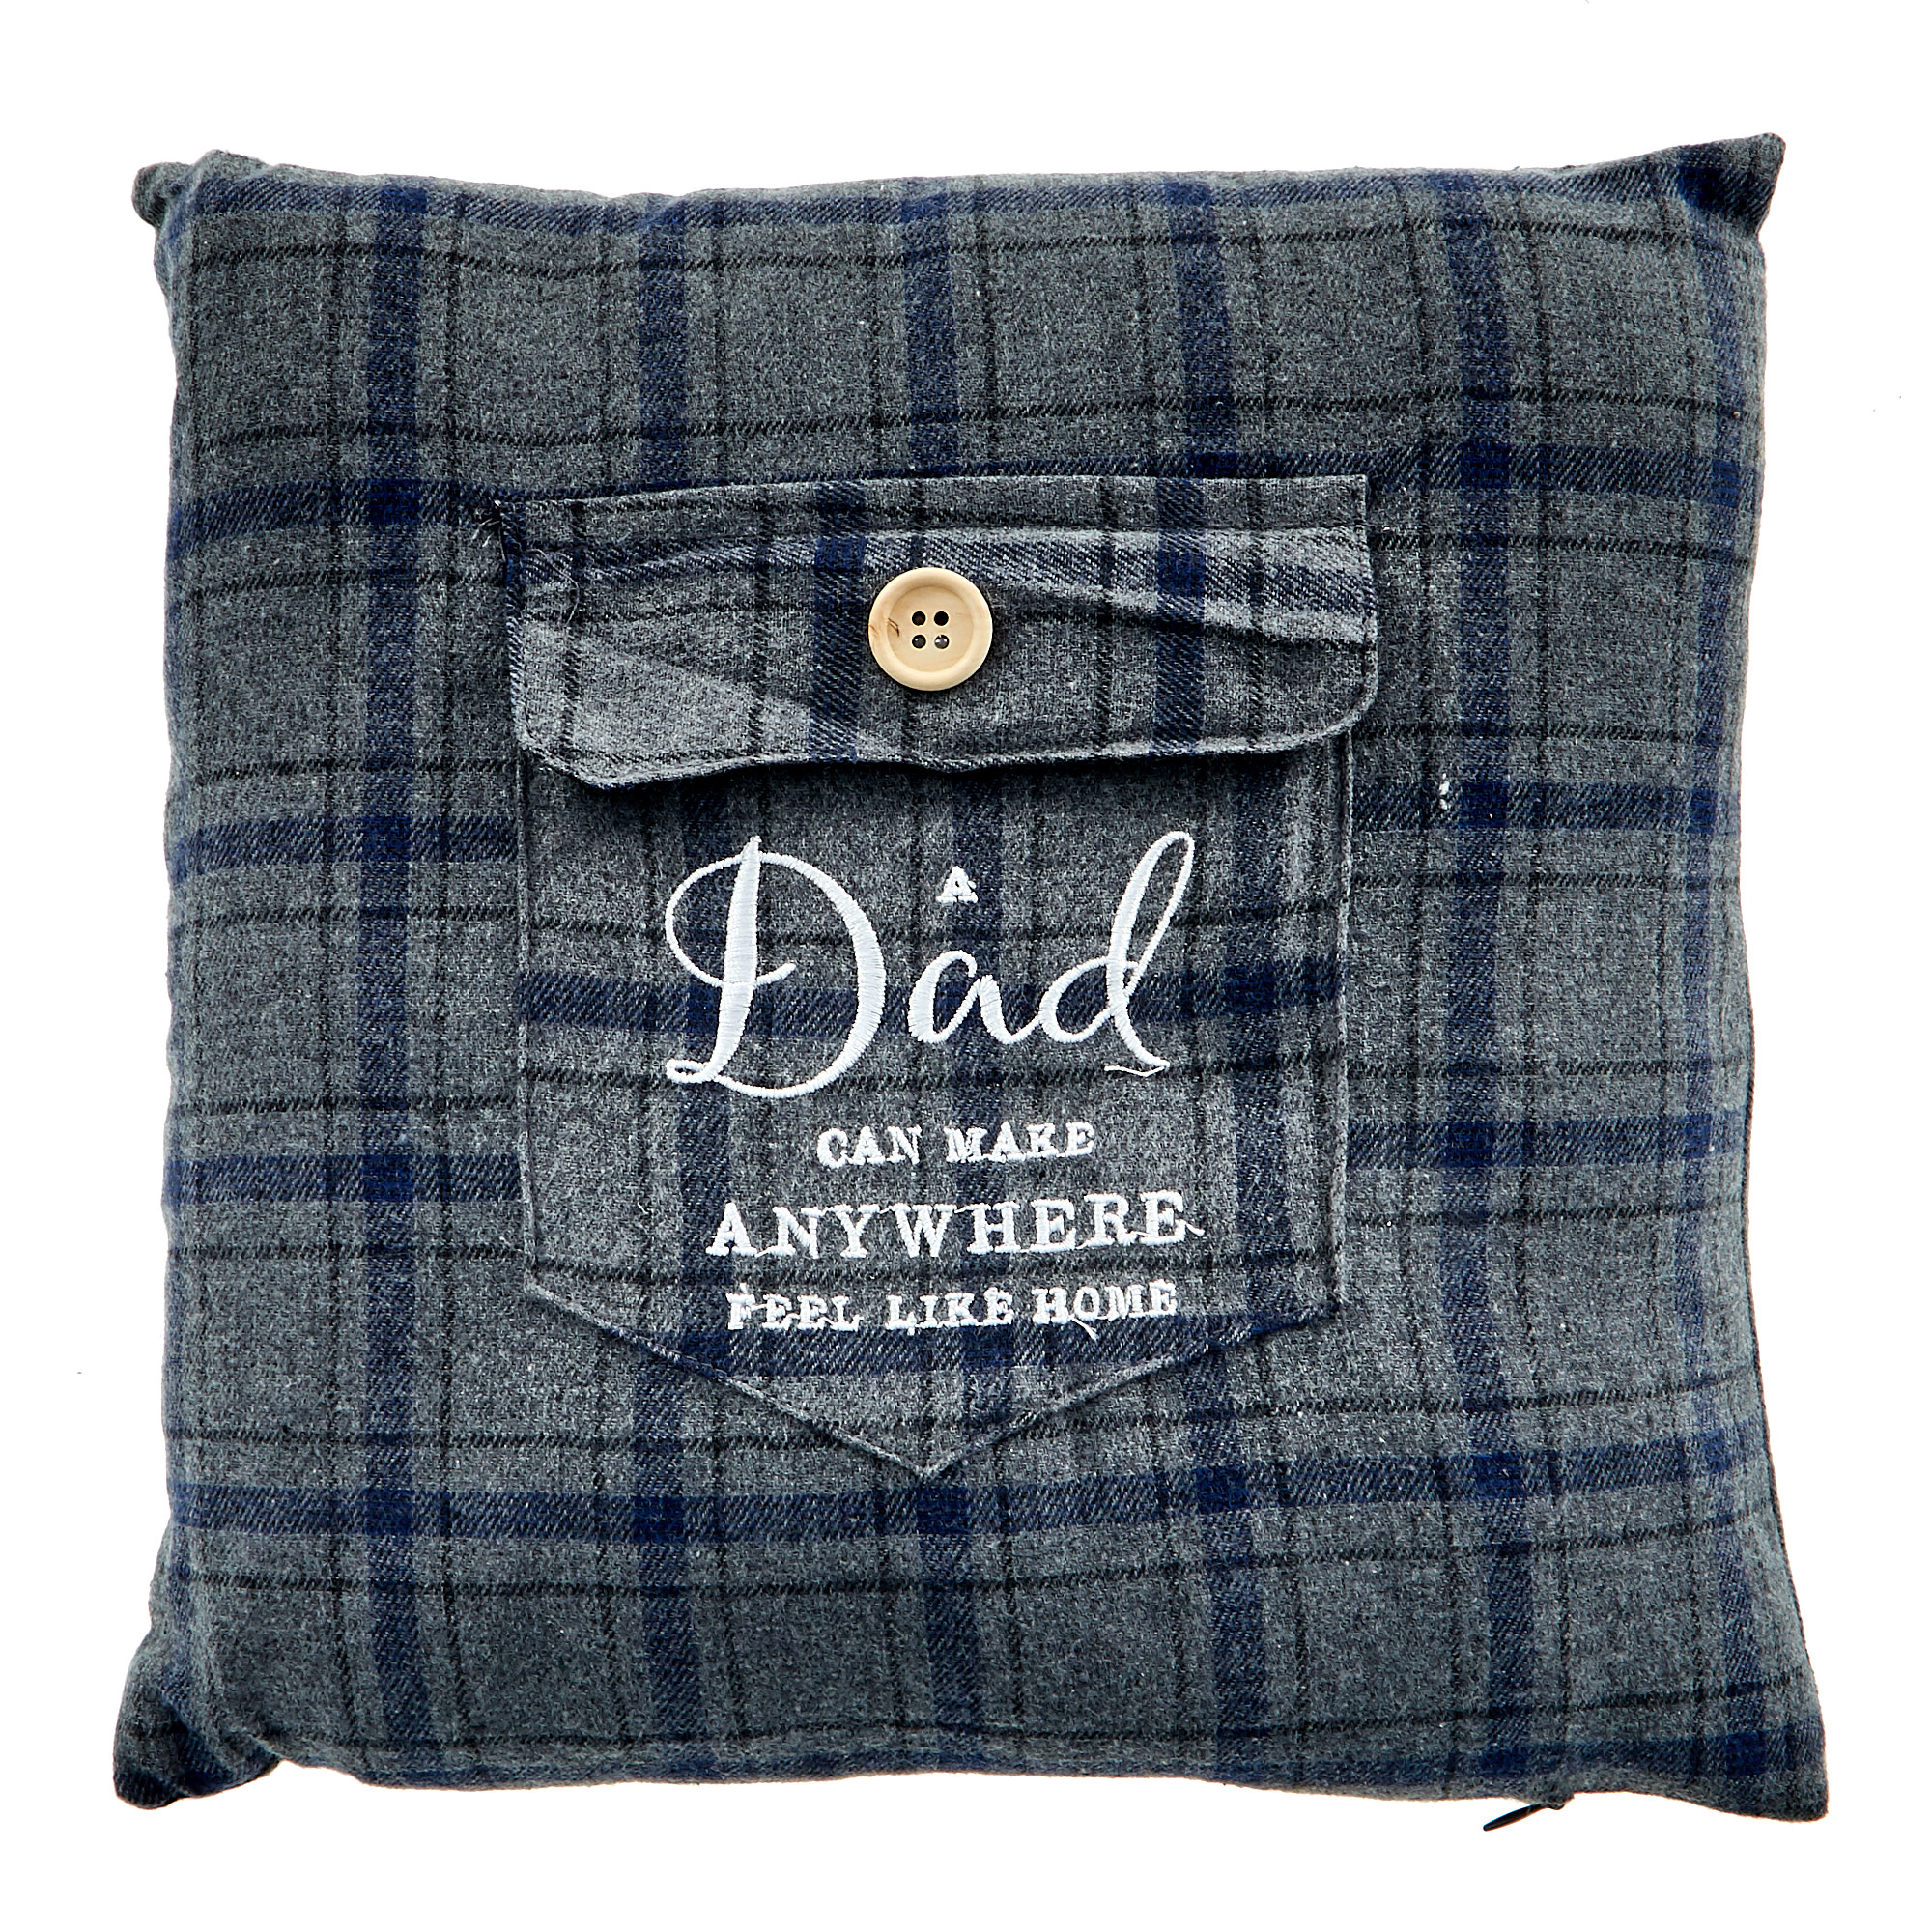 A Dad Can Make Anywhere Feel Like Home Cushion